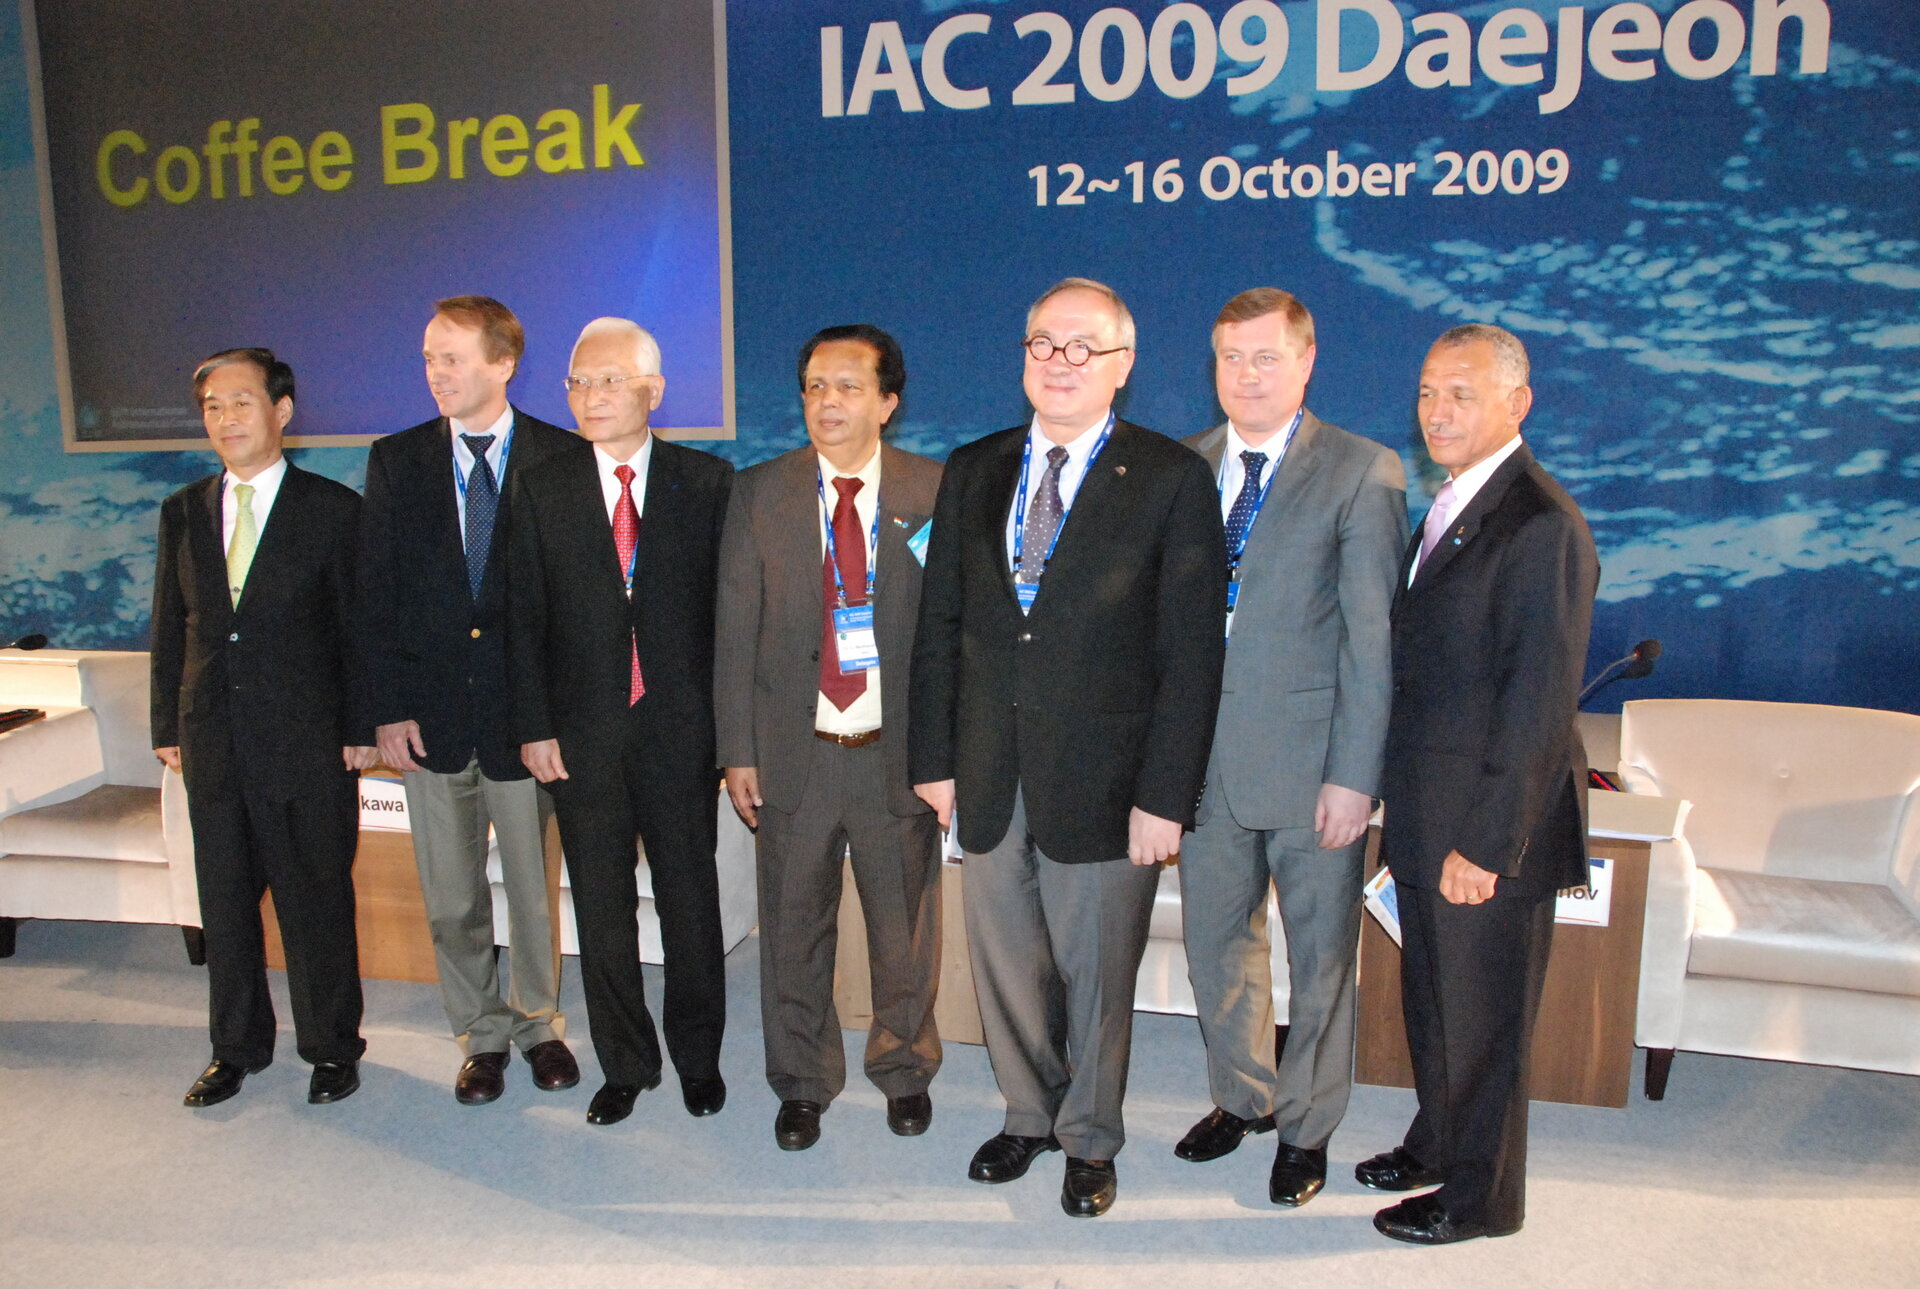 Jean-Jacques Dordain, ESA Director General, at IAC 2009